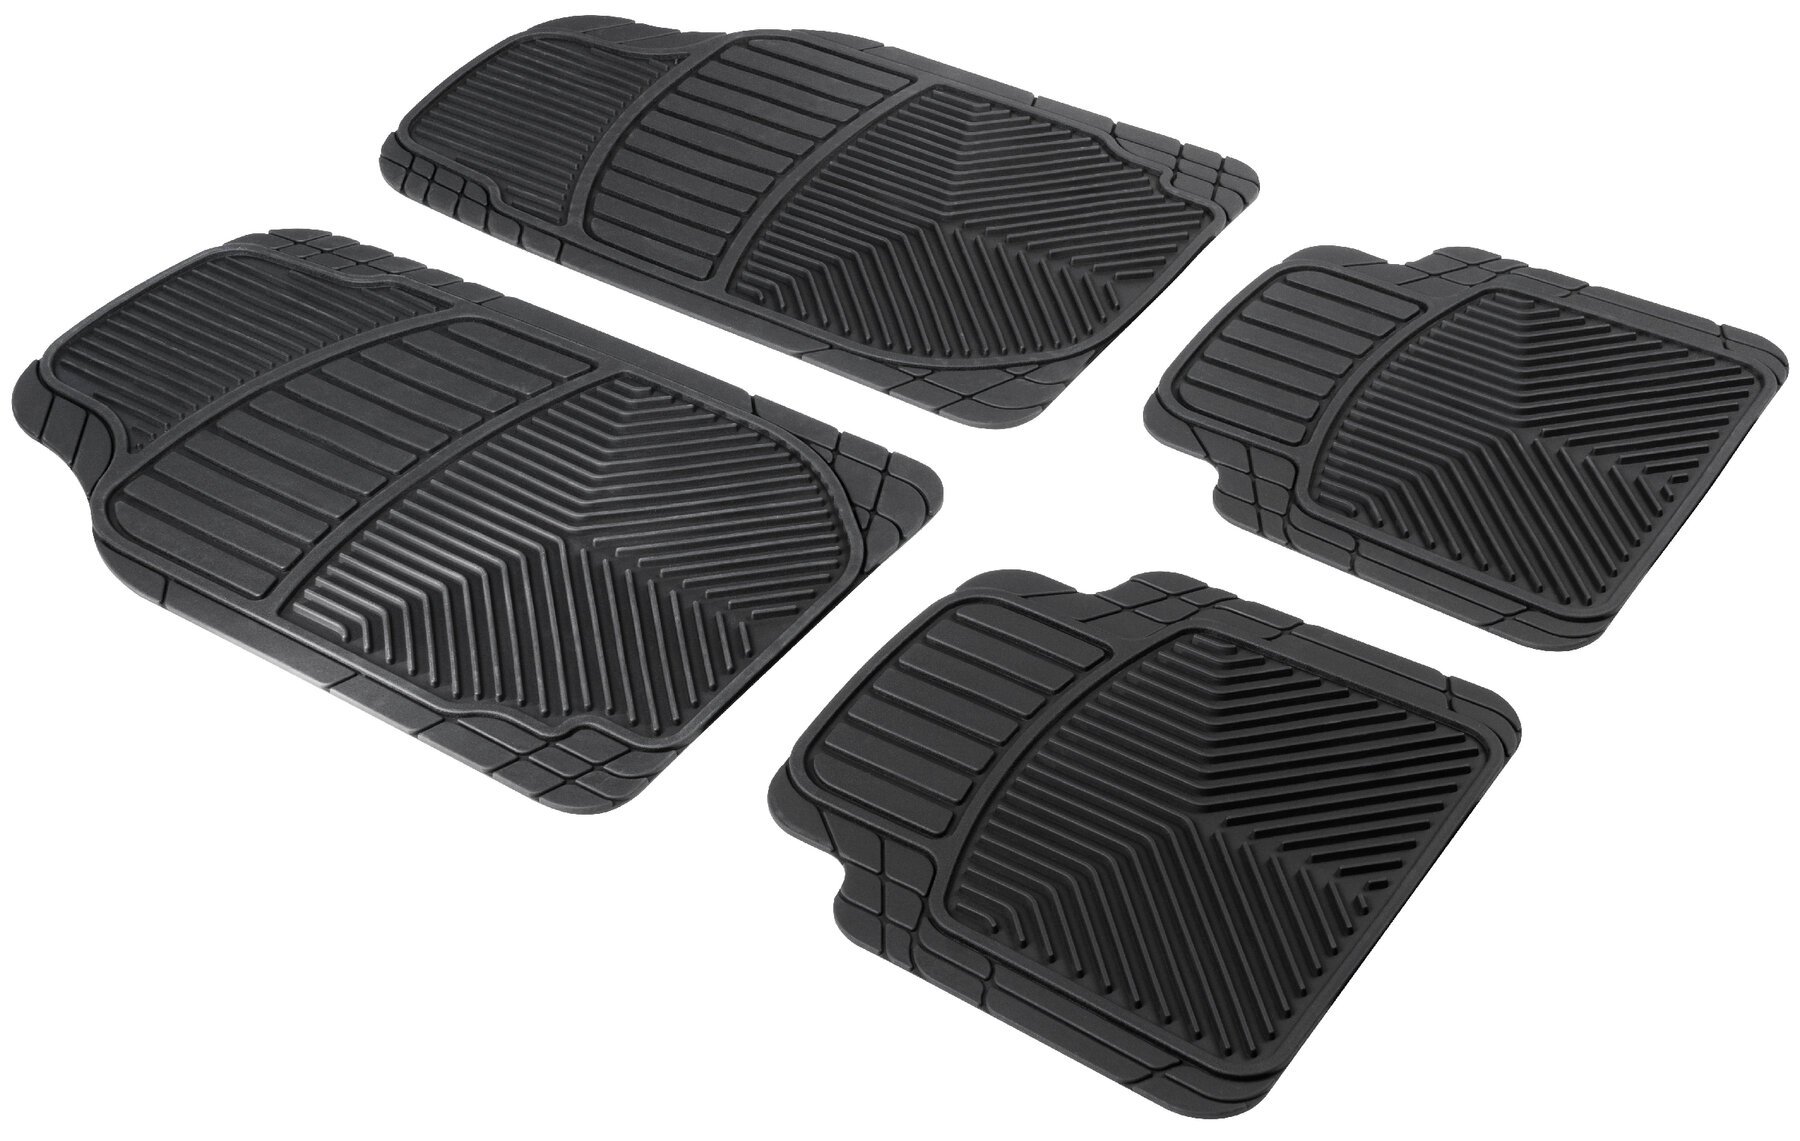 Erhöhter Rand Bär-AfC HY05224n Gummimatten Auto Fußmatten Schwarz Passgenau für Modell Siehe Details Set 4-teilig 